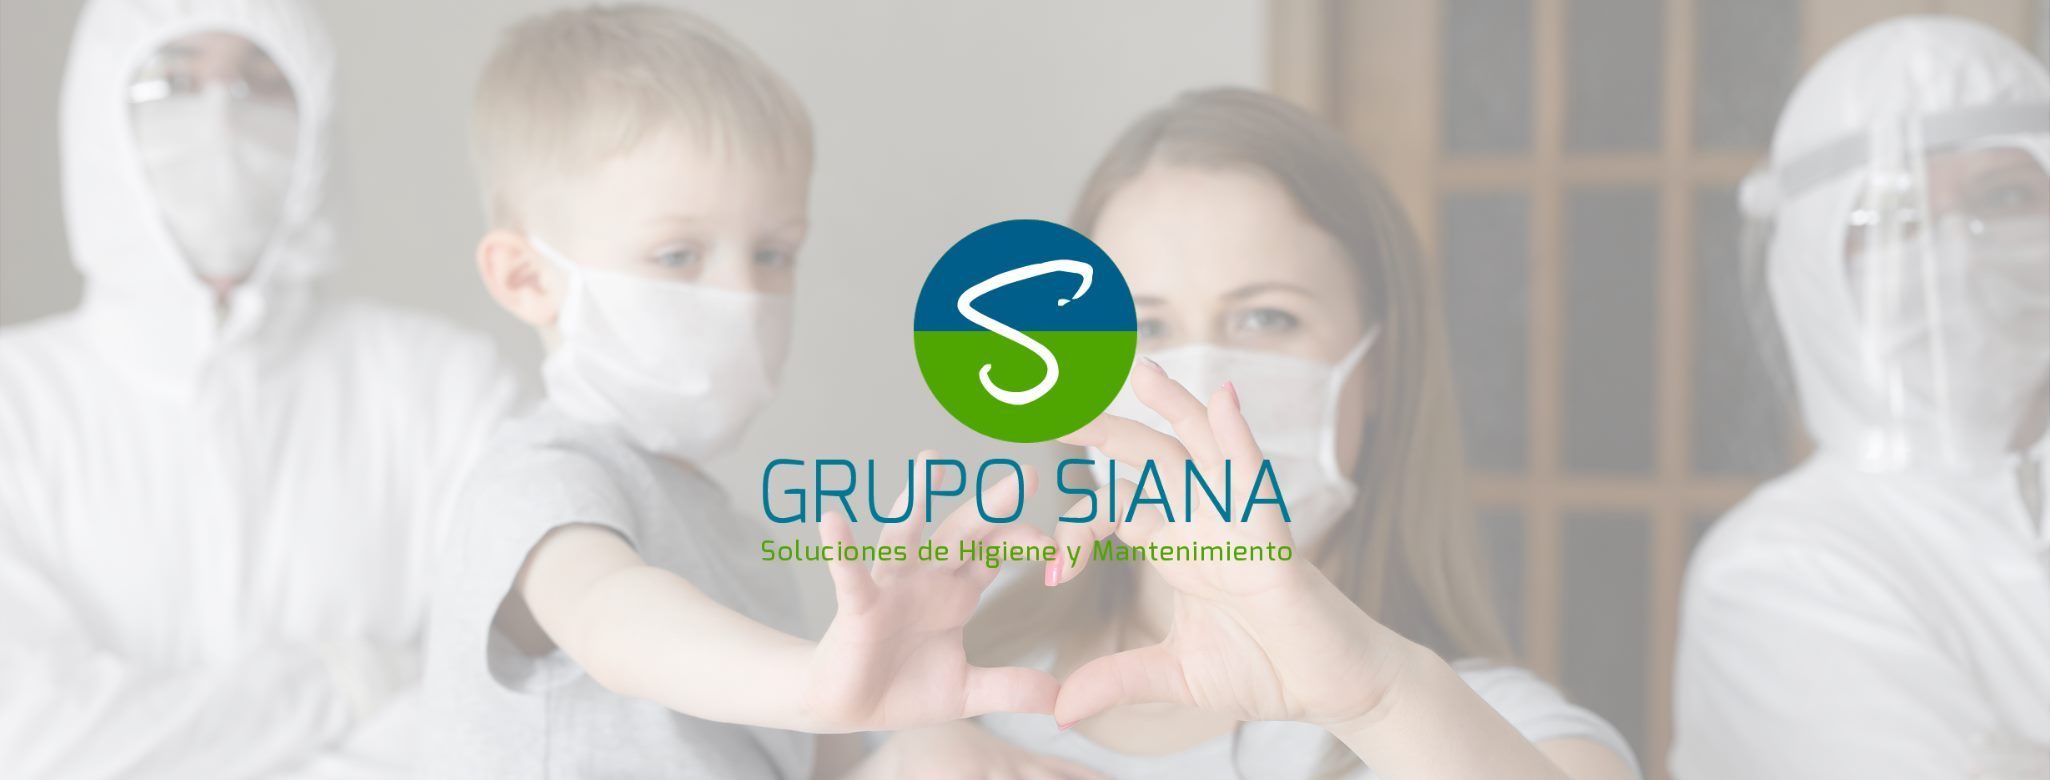 Grupo Siana soluciones de Higiene y Mantenimiento S.A de C.V. 2